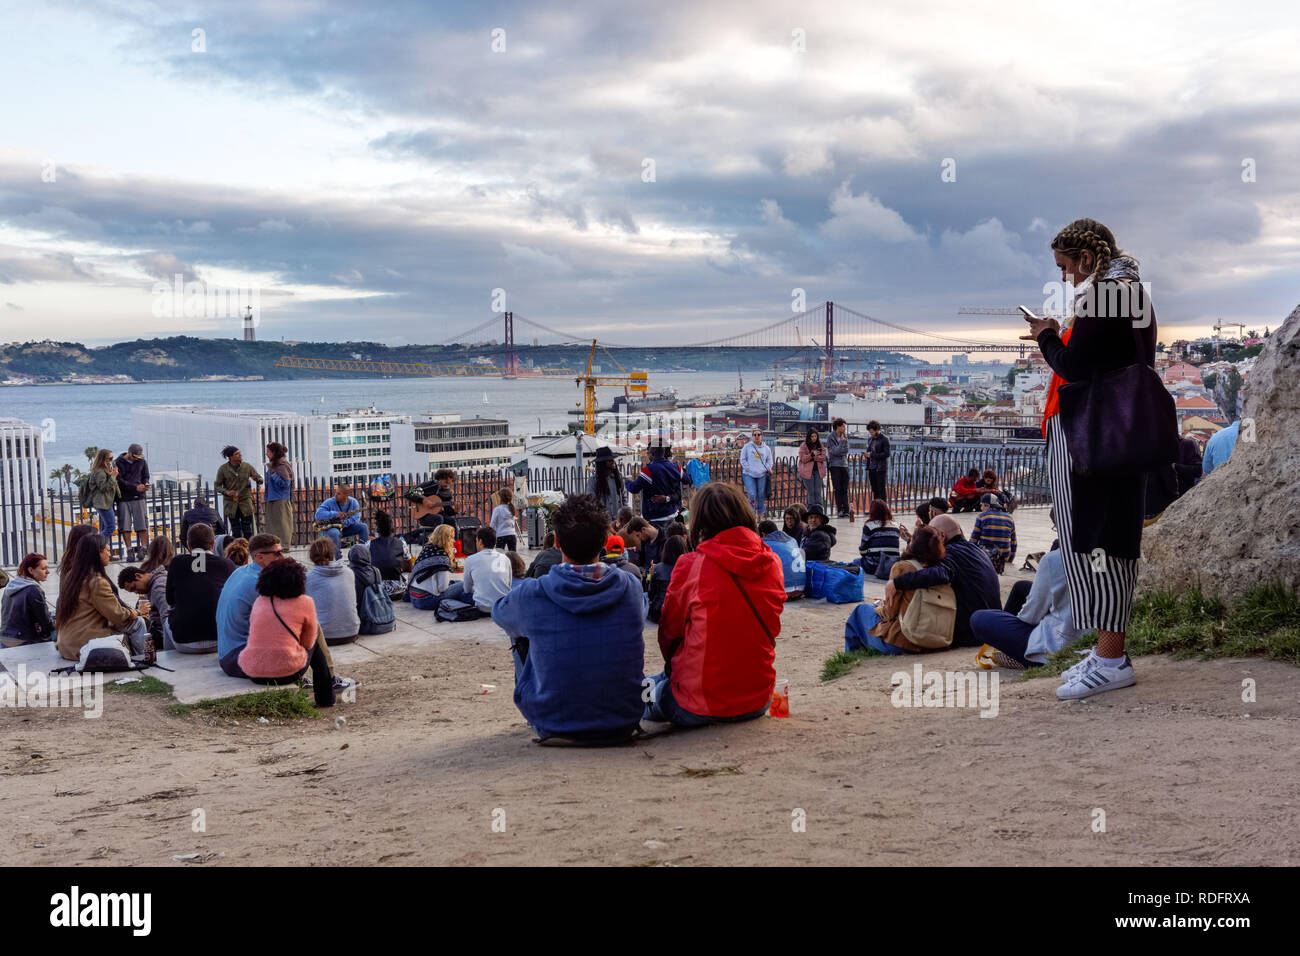 Los jóvenes disfrutando del atardecer en el Miradouro de Santa Catarina en Lisboa, Portugal. Foto de stock